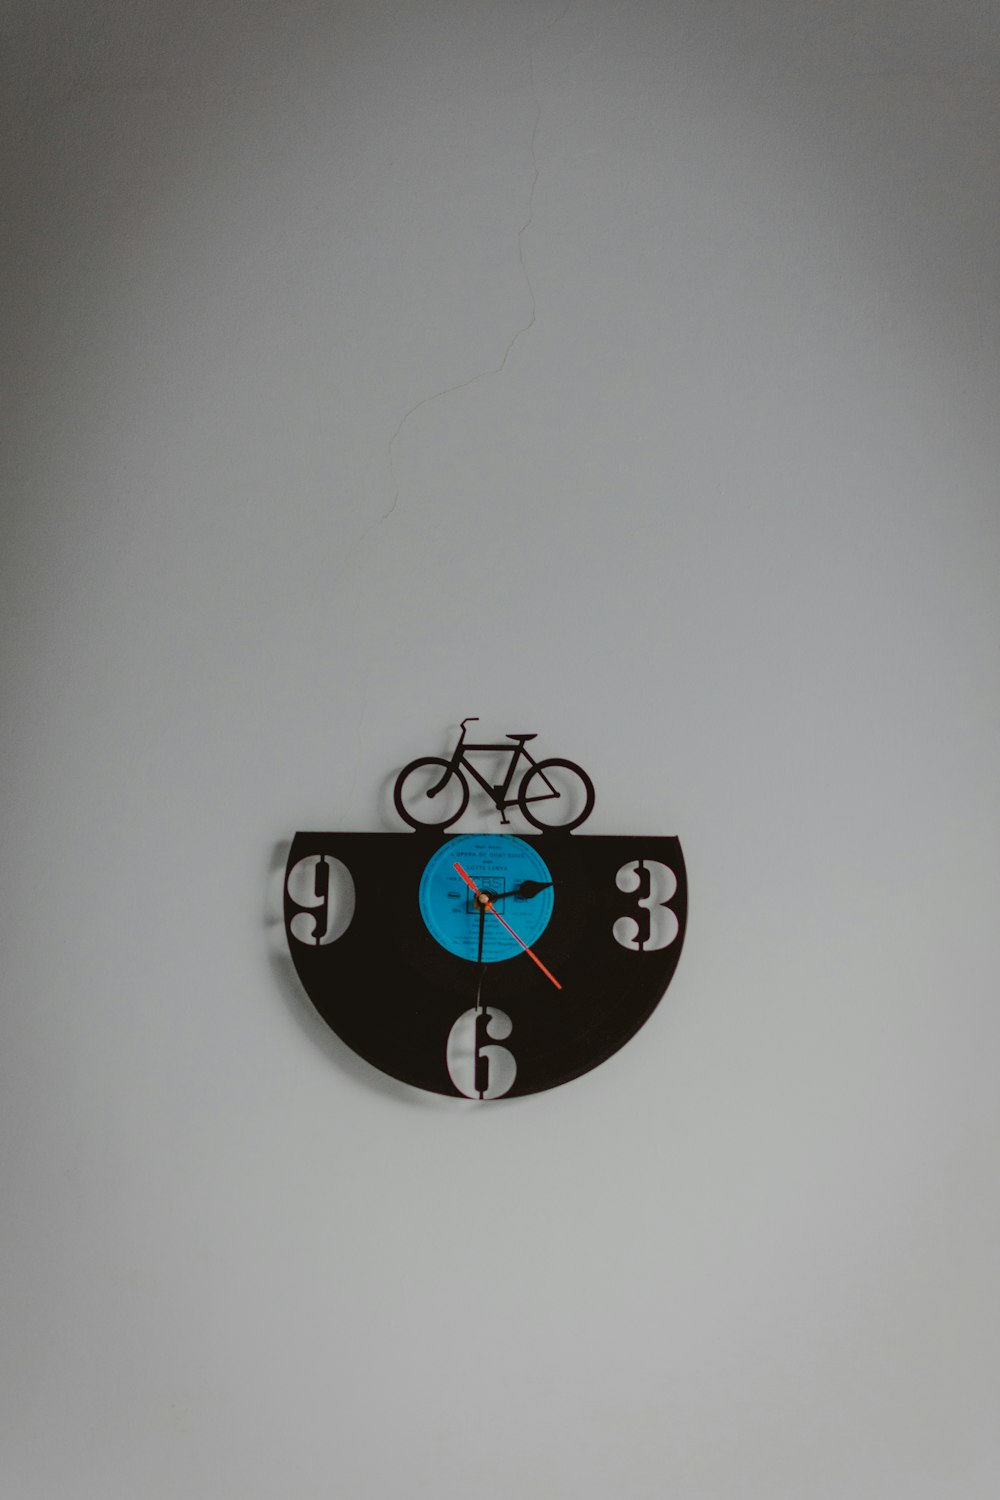 Reloj de pared analógico negro y azul con temática de bicicleta que muestra la hora 3:30